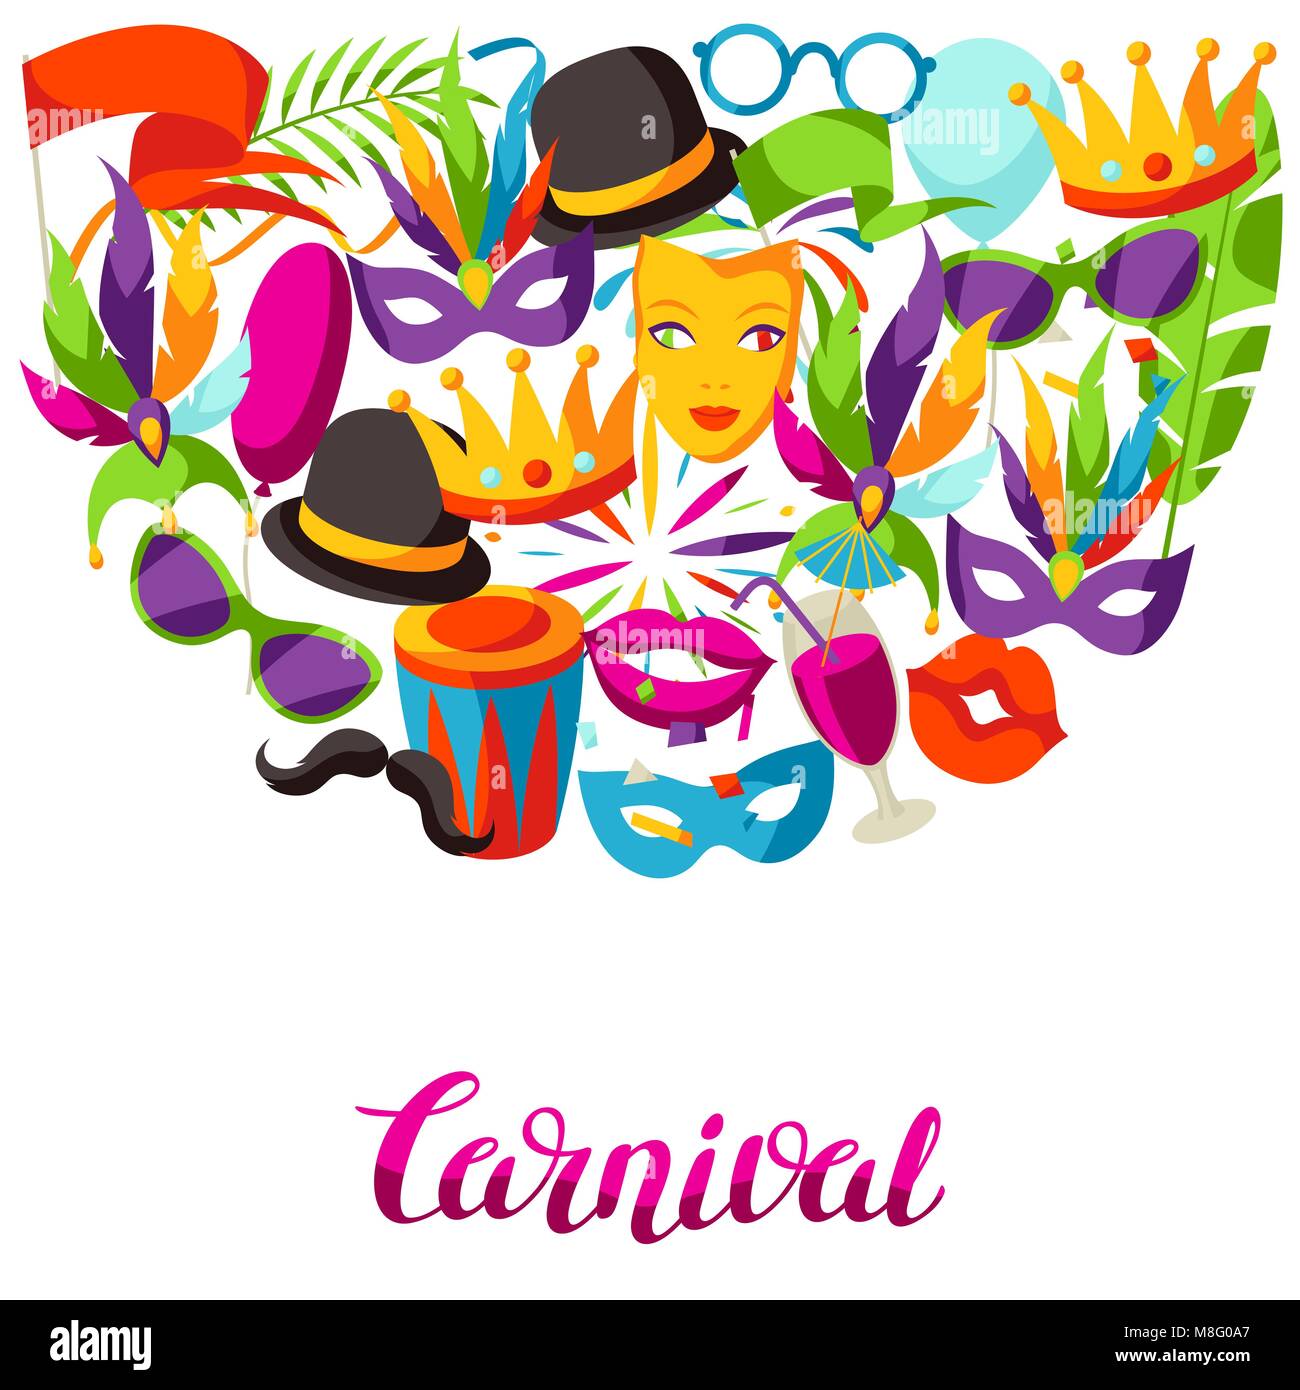 Immagini Stock - Compleanno Colorato O Sfondo Di Carnevale Con Articoli Per  Feste. Concetto Di Festività. Image 93242307